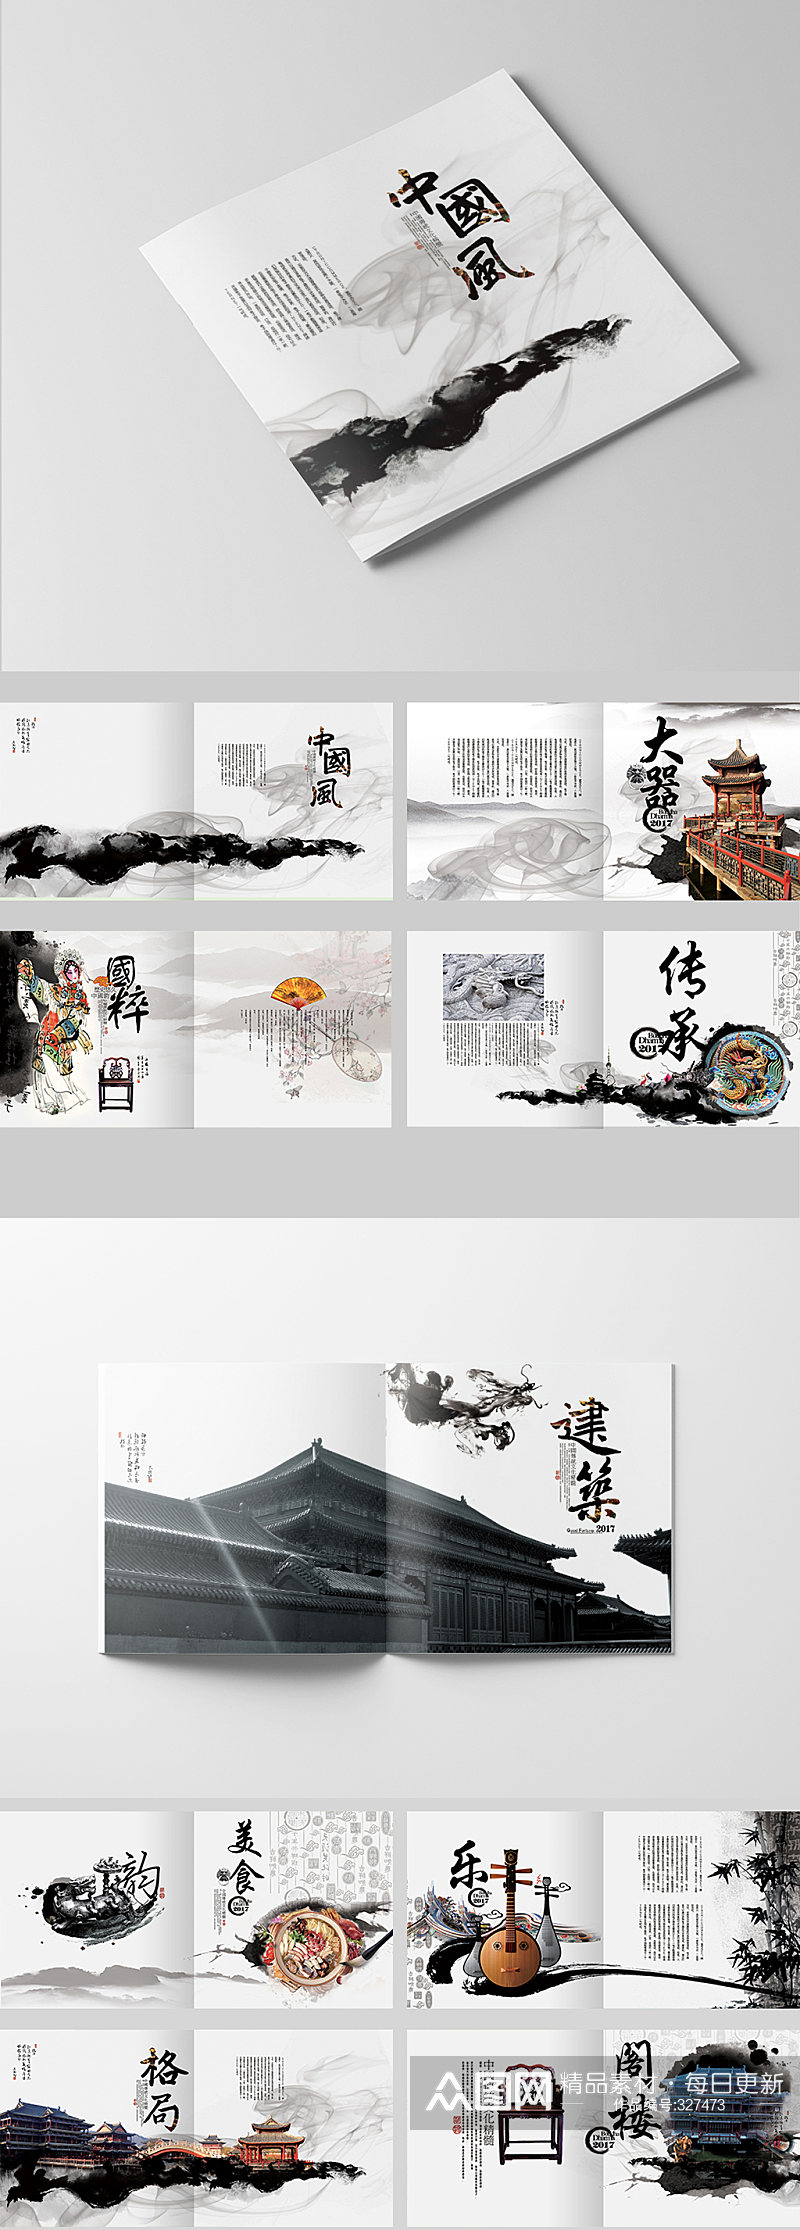 中国风整套企业文化画册素材